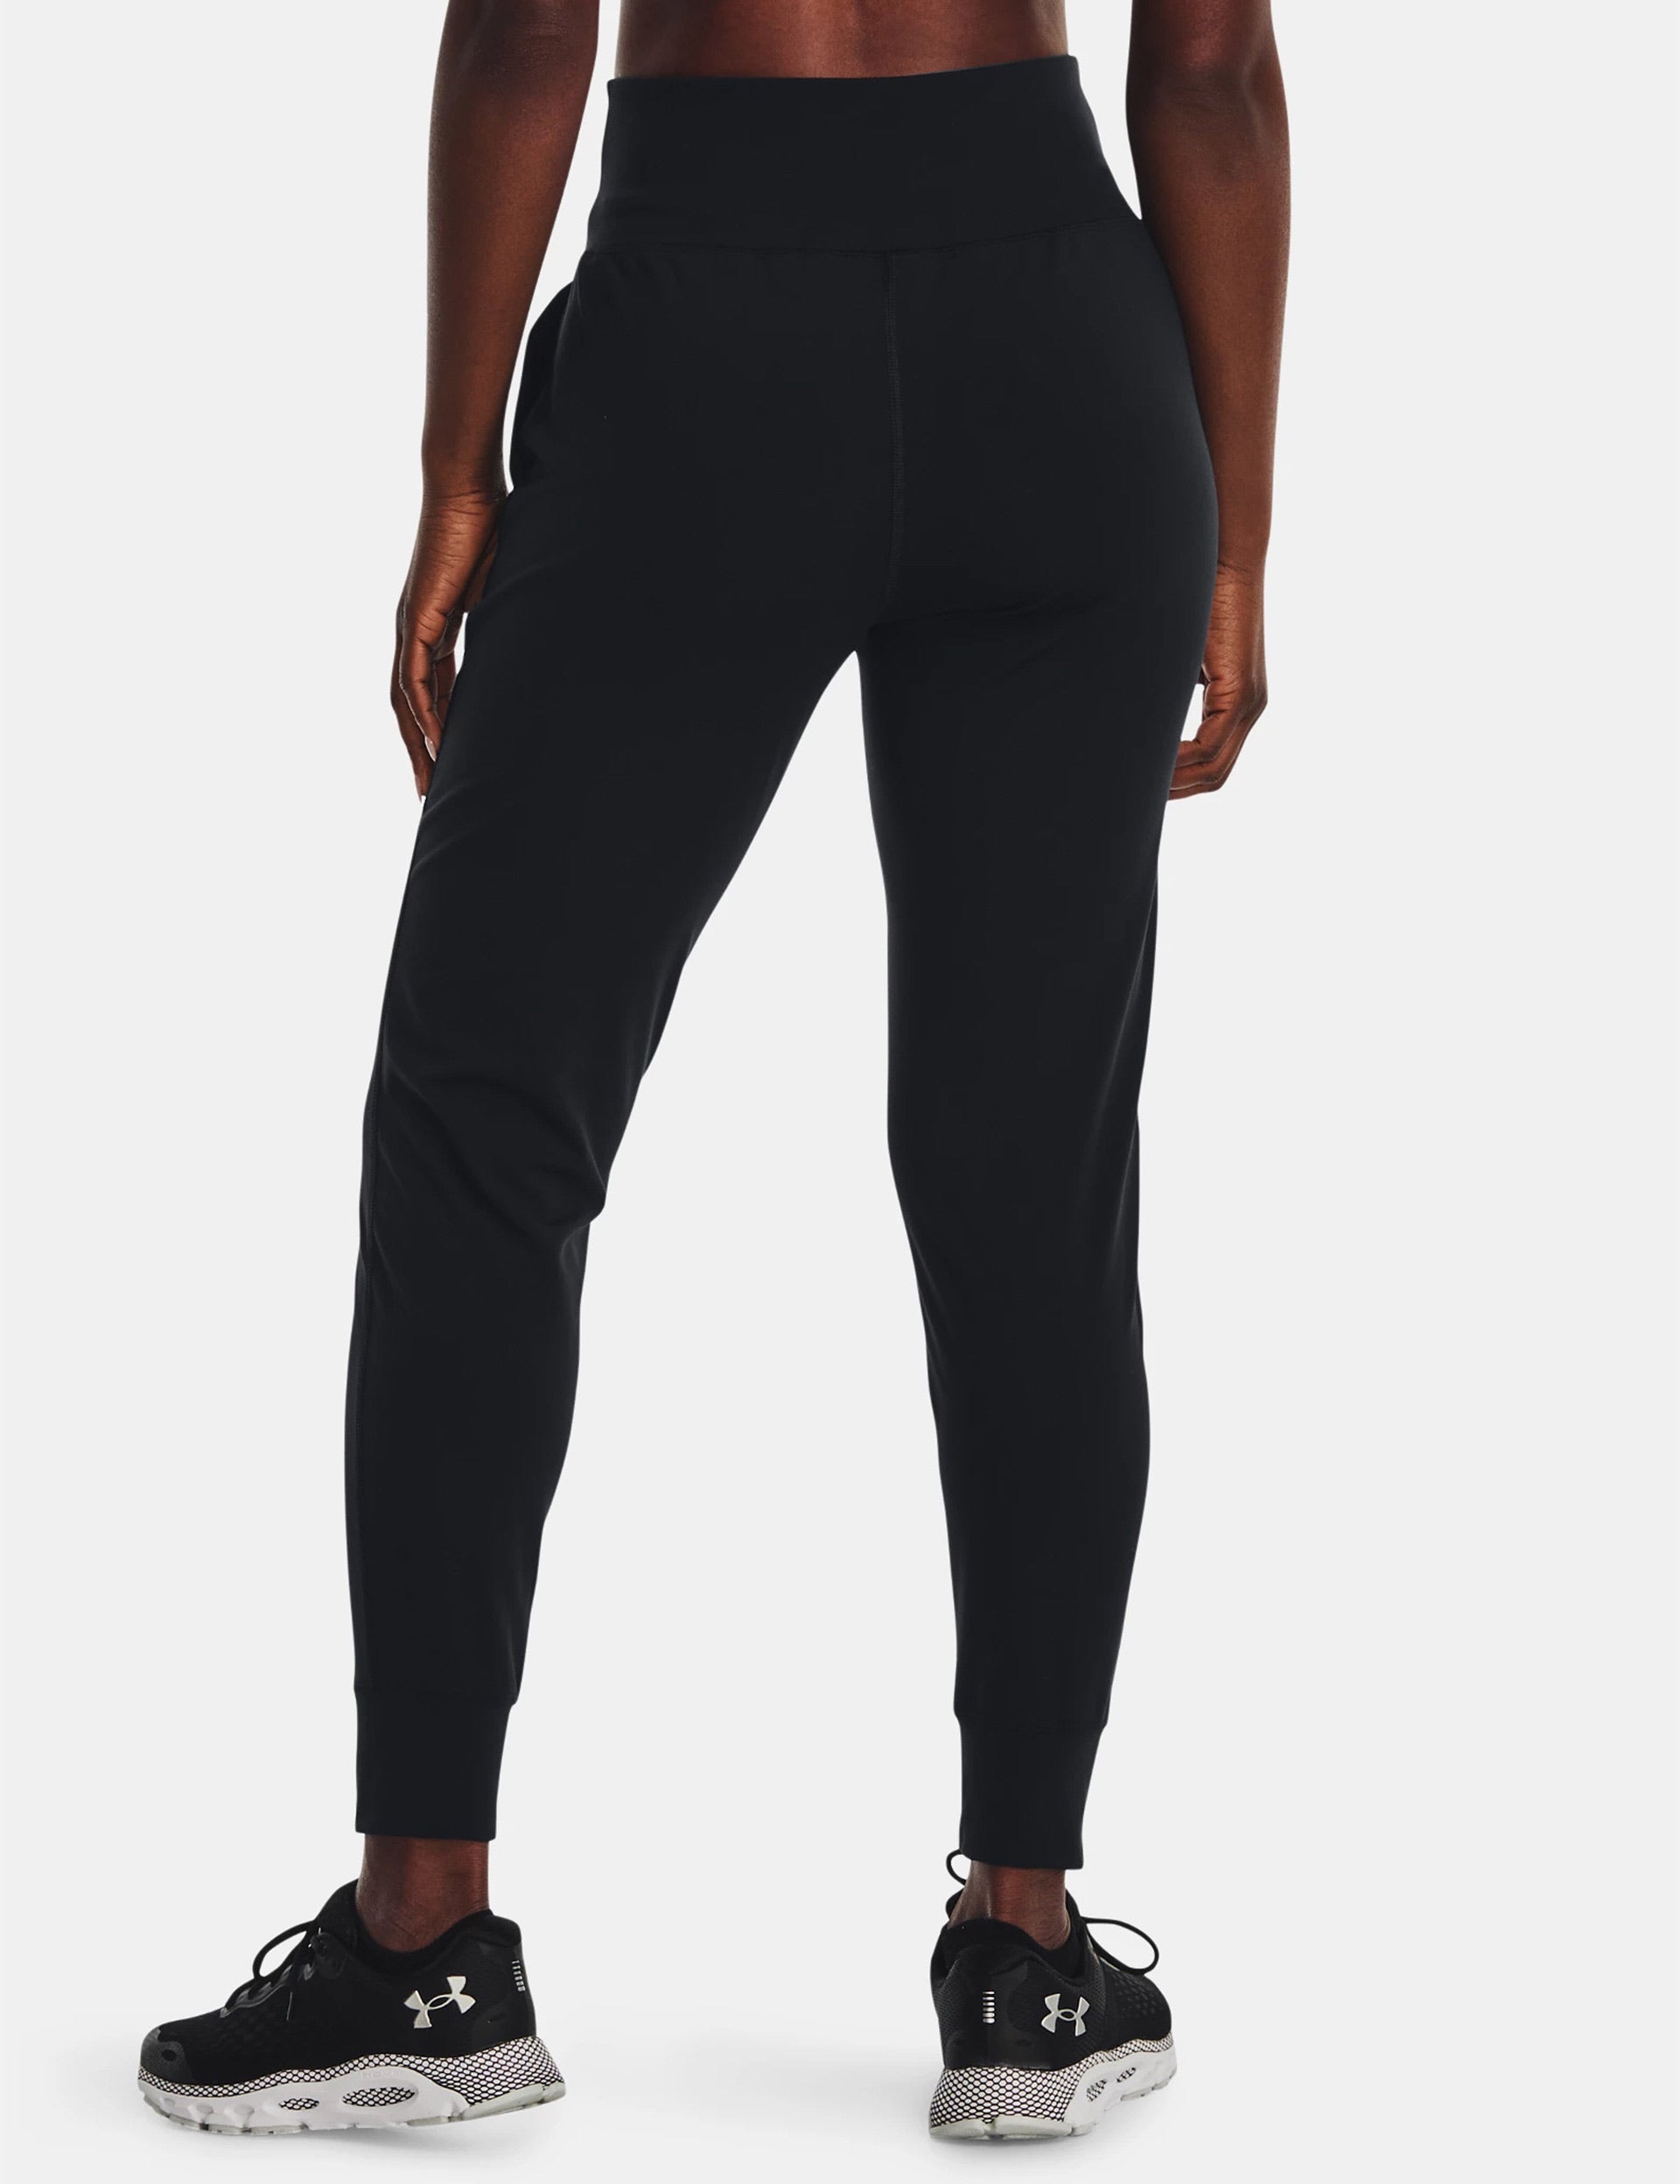 Under Armour Women's Move Core Pants Size 2XL # 1317823 100 $80 Grey/ Black